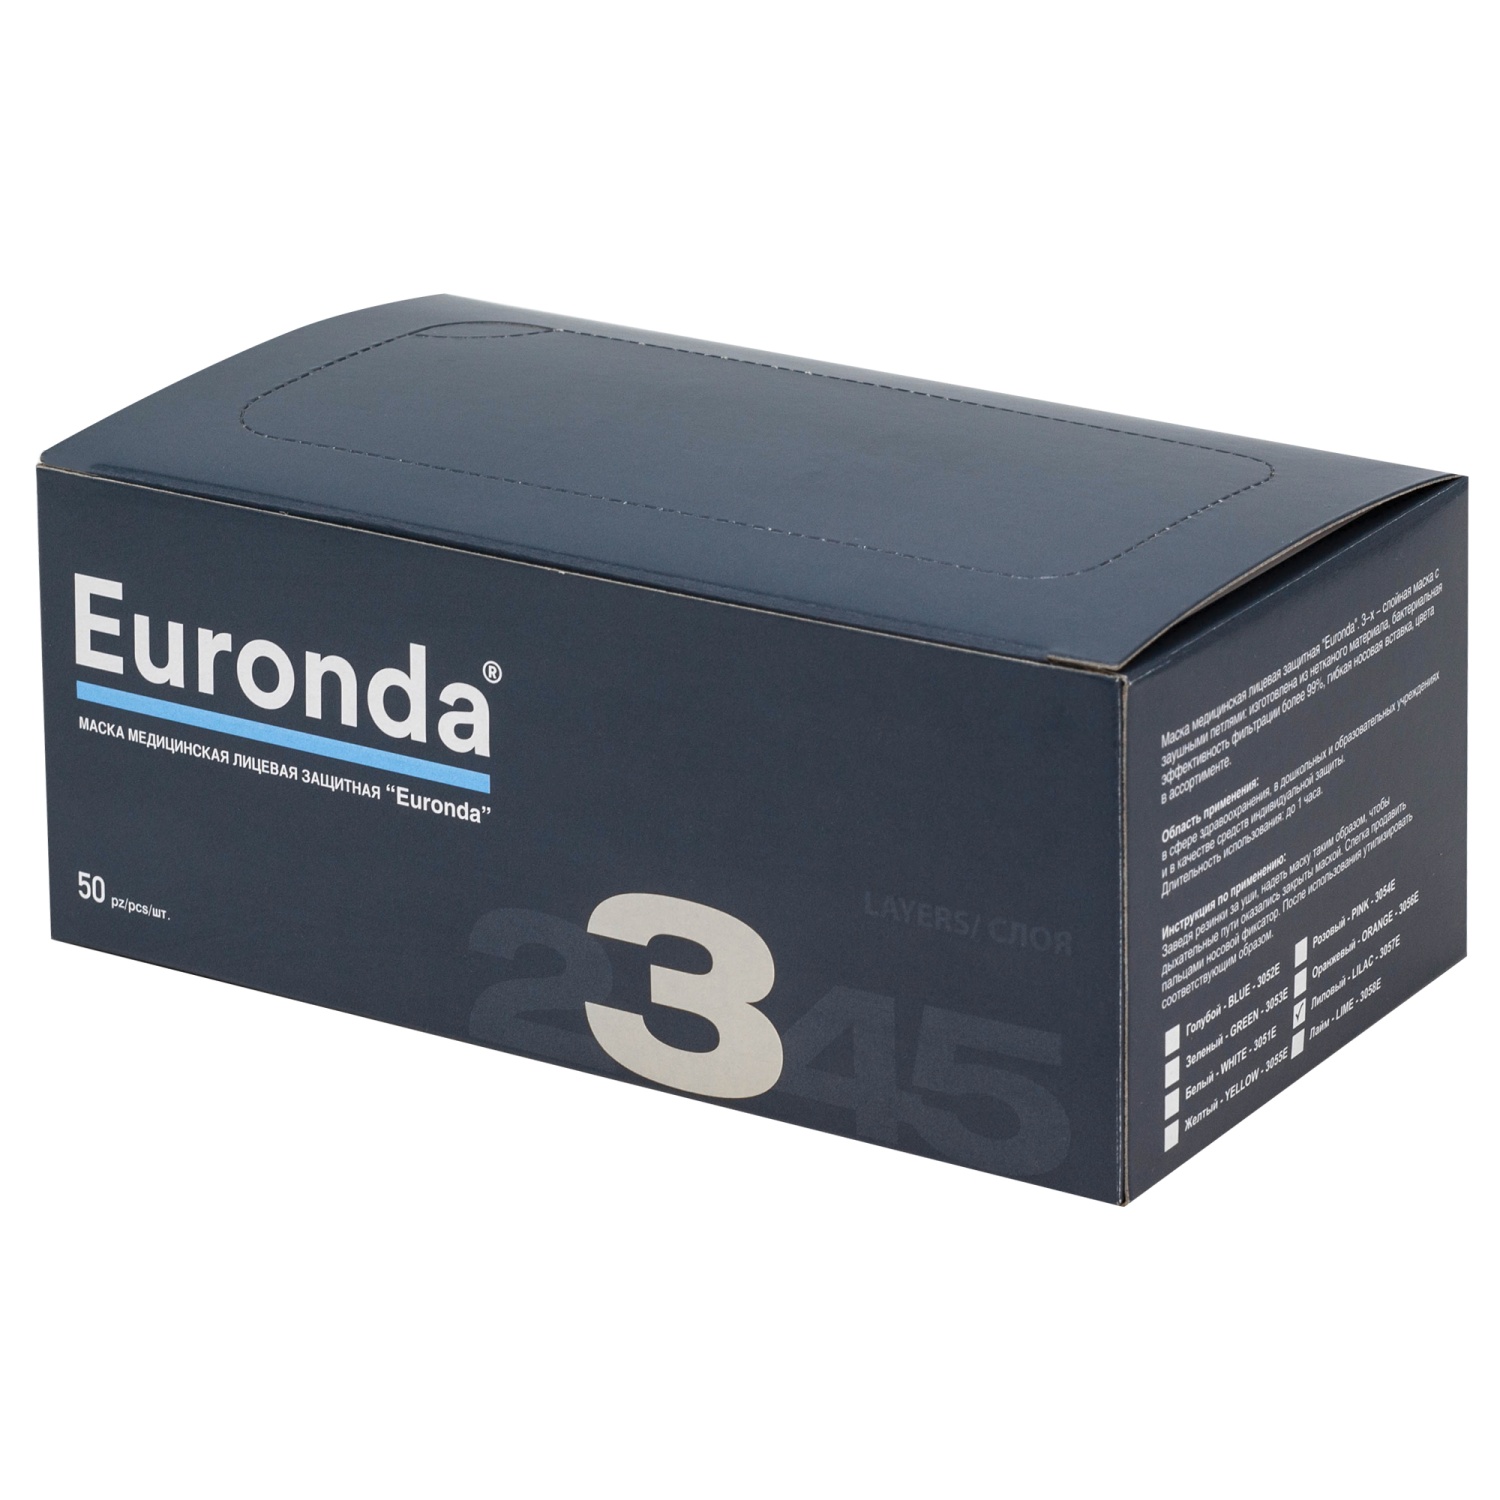 Маски медицинские лицевые защитные "Euronda",защита 3, 3-х слойные (50шт), голубые